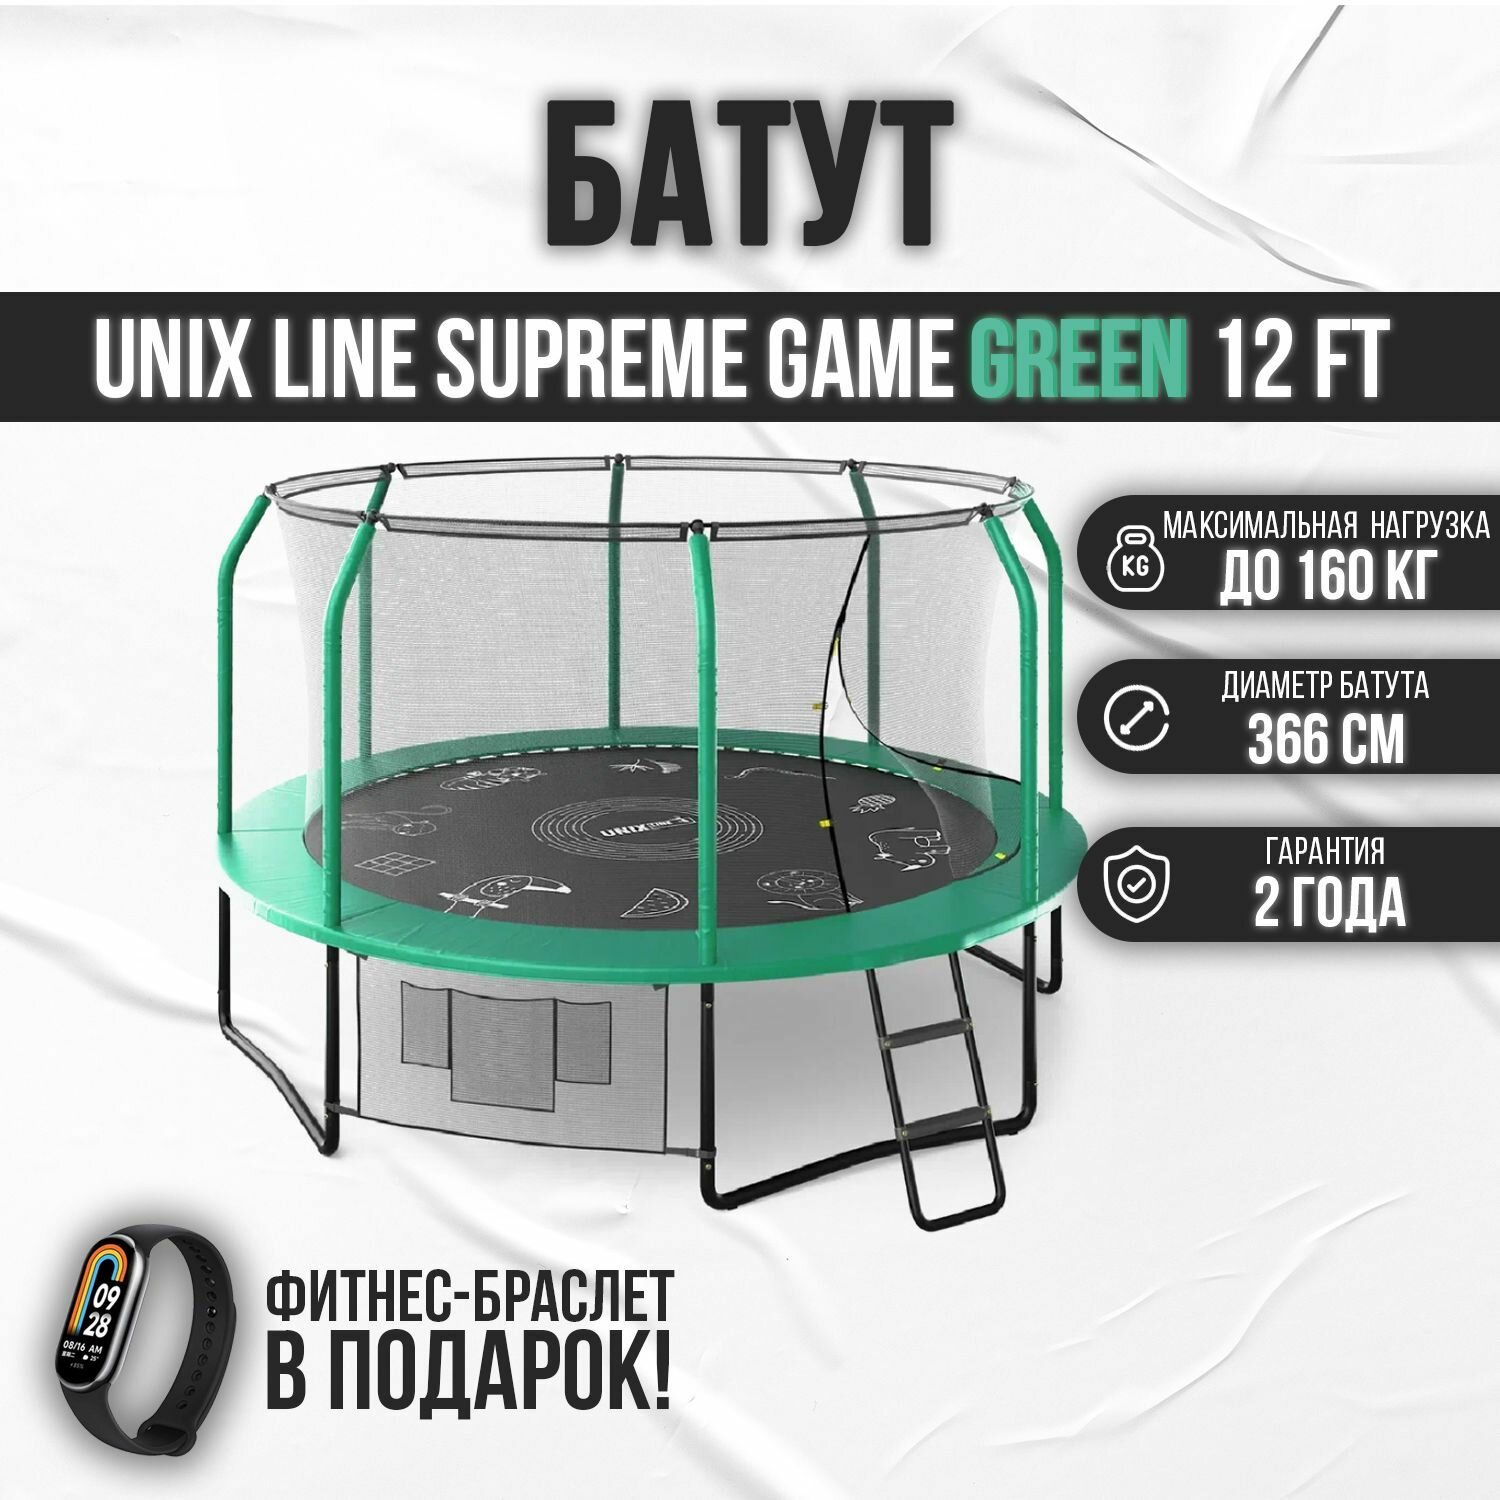 Батут каркасный UNIX line SUPREME GAME 12 ft (green) / с защитной сеткой / с лестницей / для детей / для улицы / до 160 кг / диаметр 366 см + Фитнес браслет